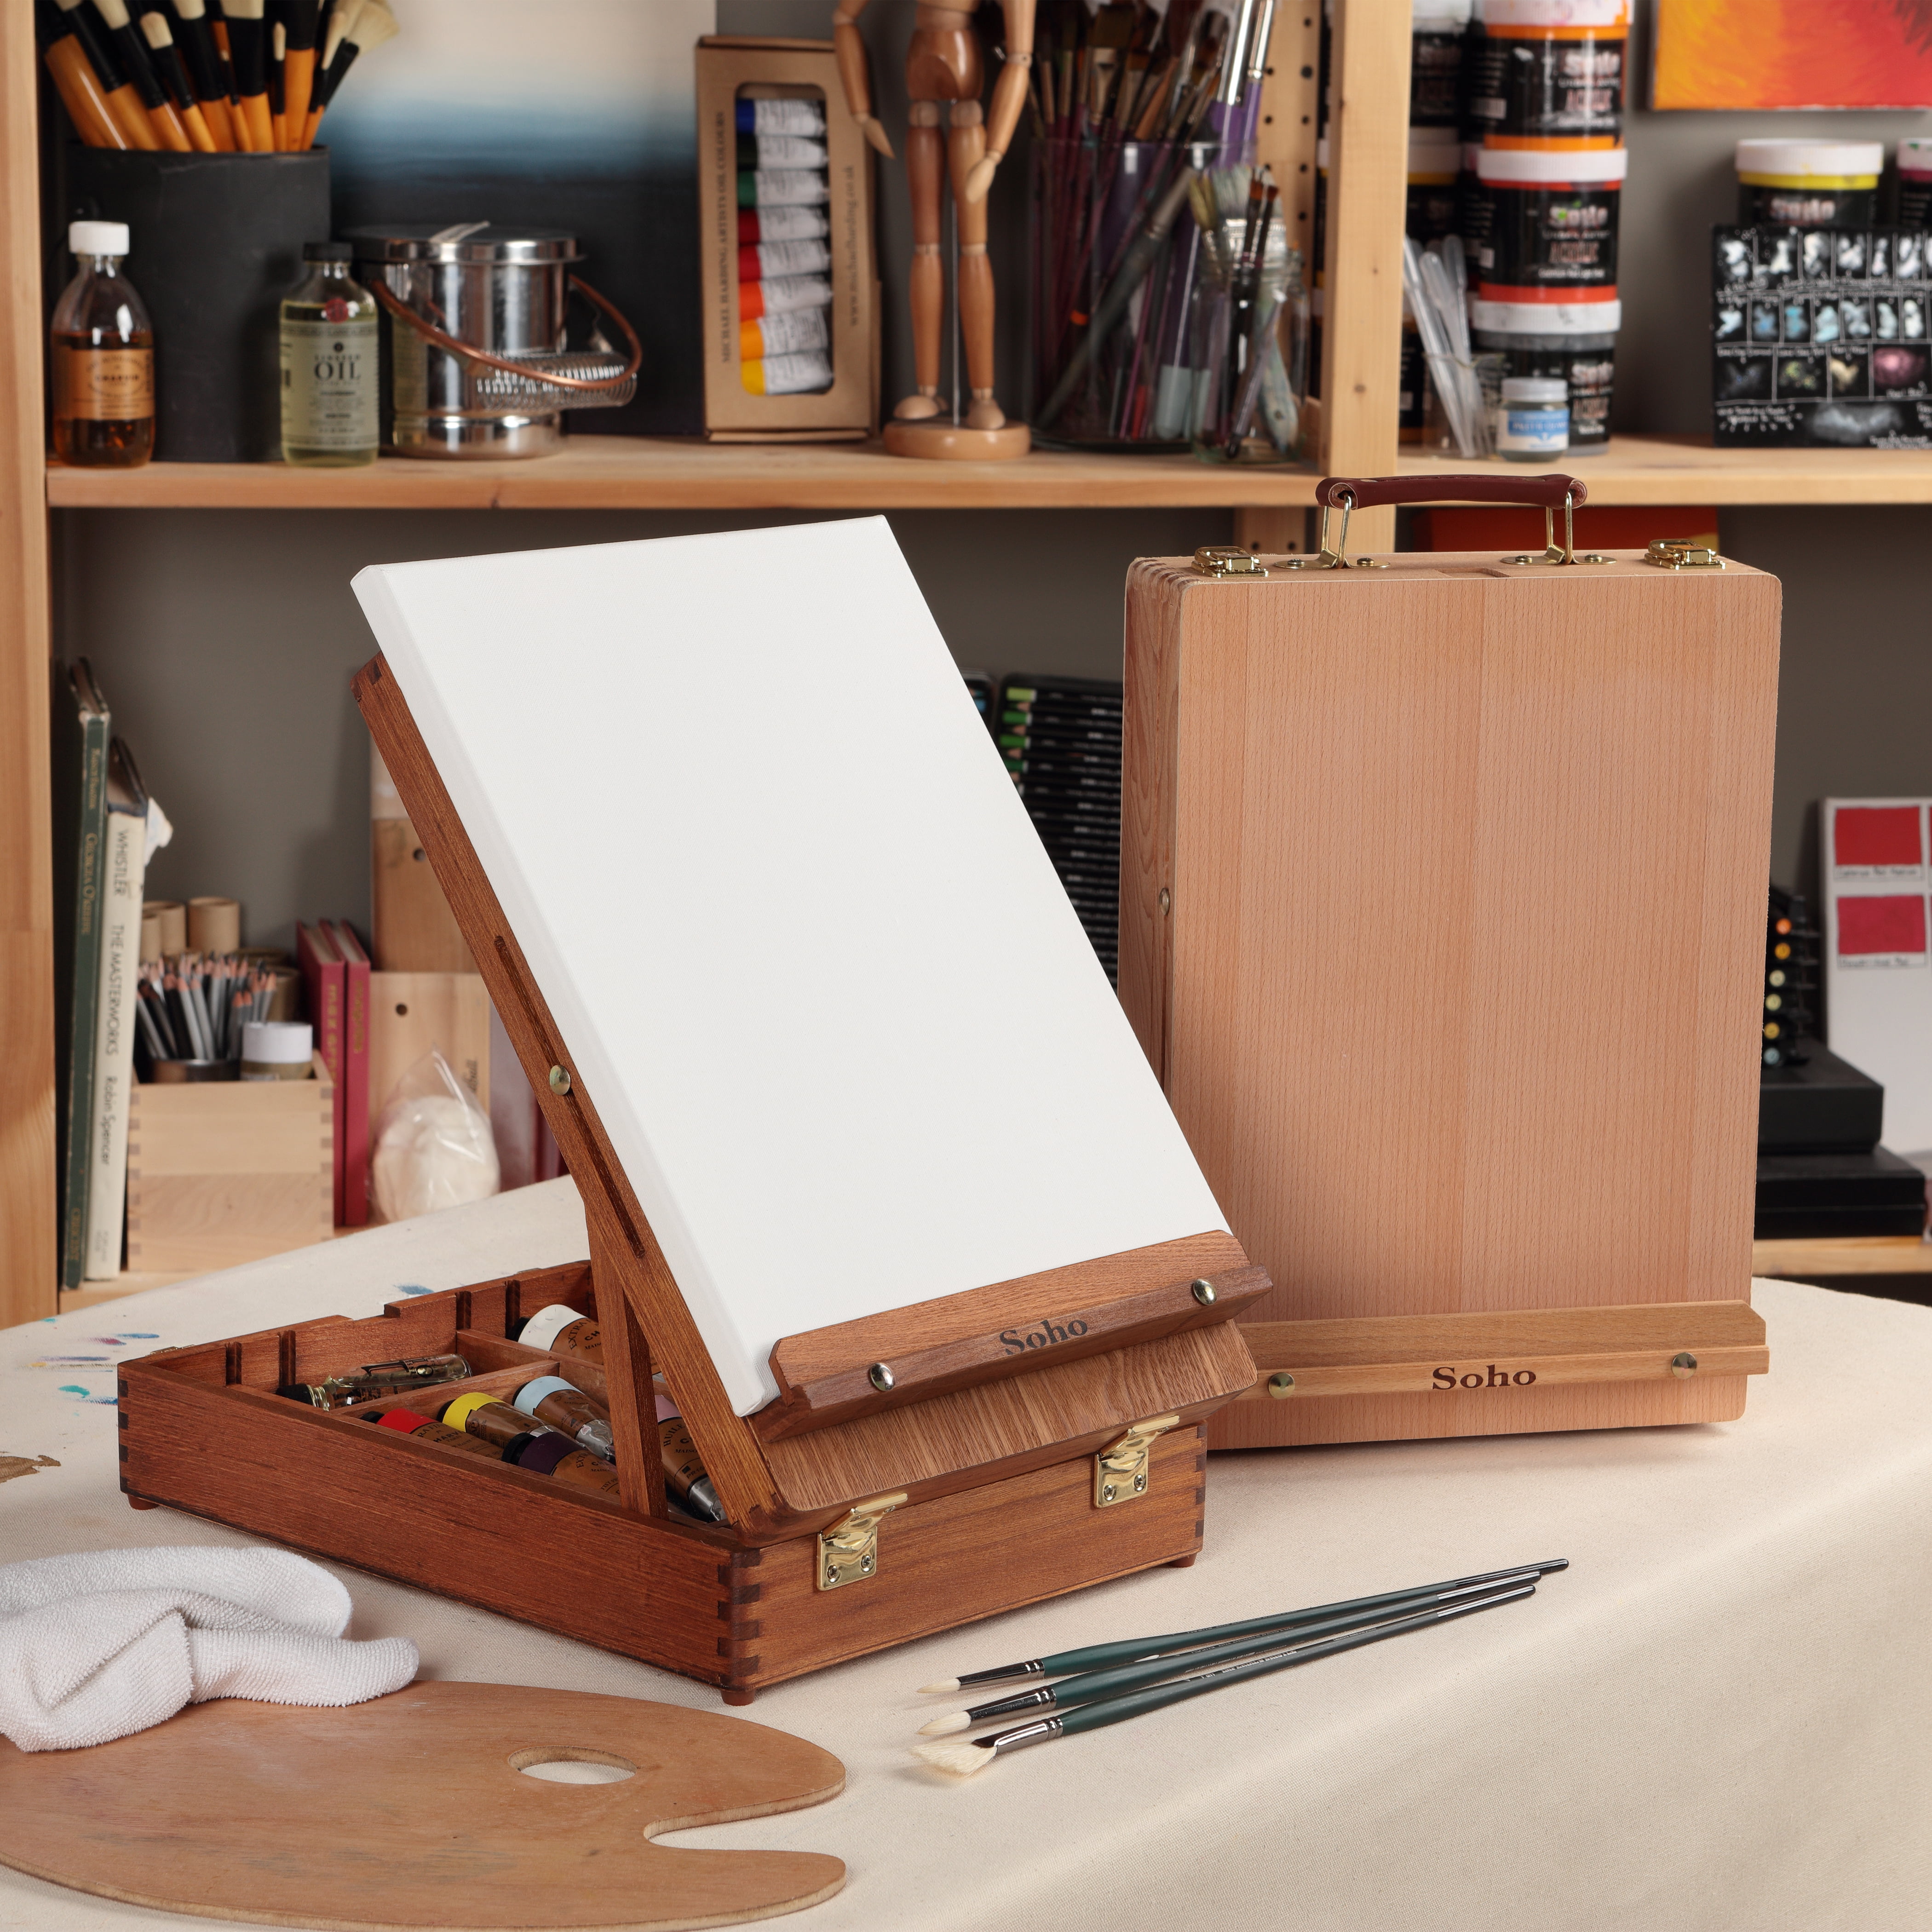 Newport Medium Artist Wood Sketchbox Easel, Table Desktop Storage